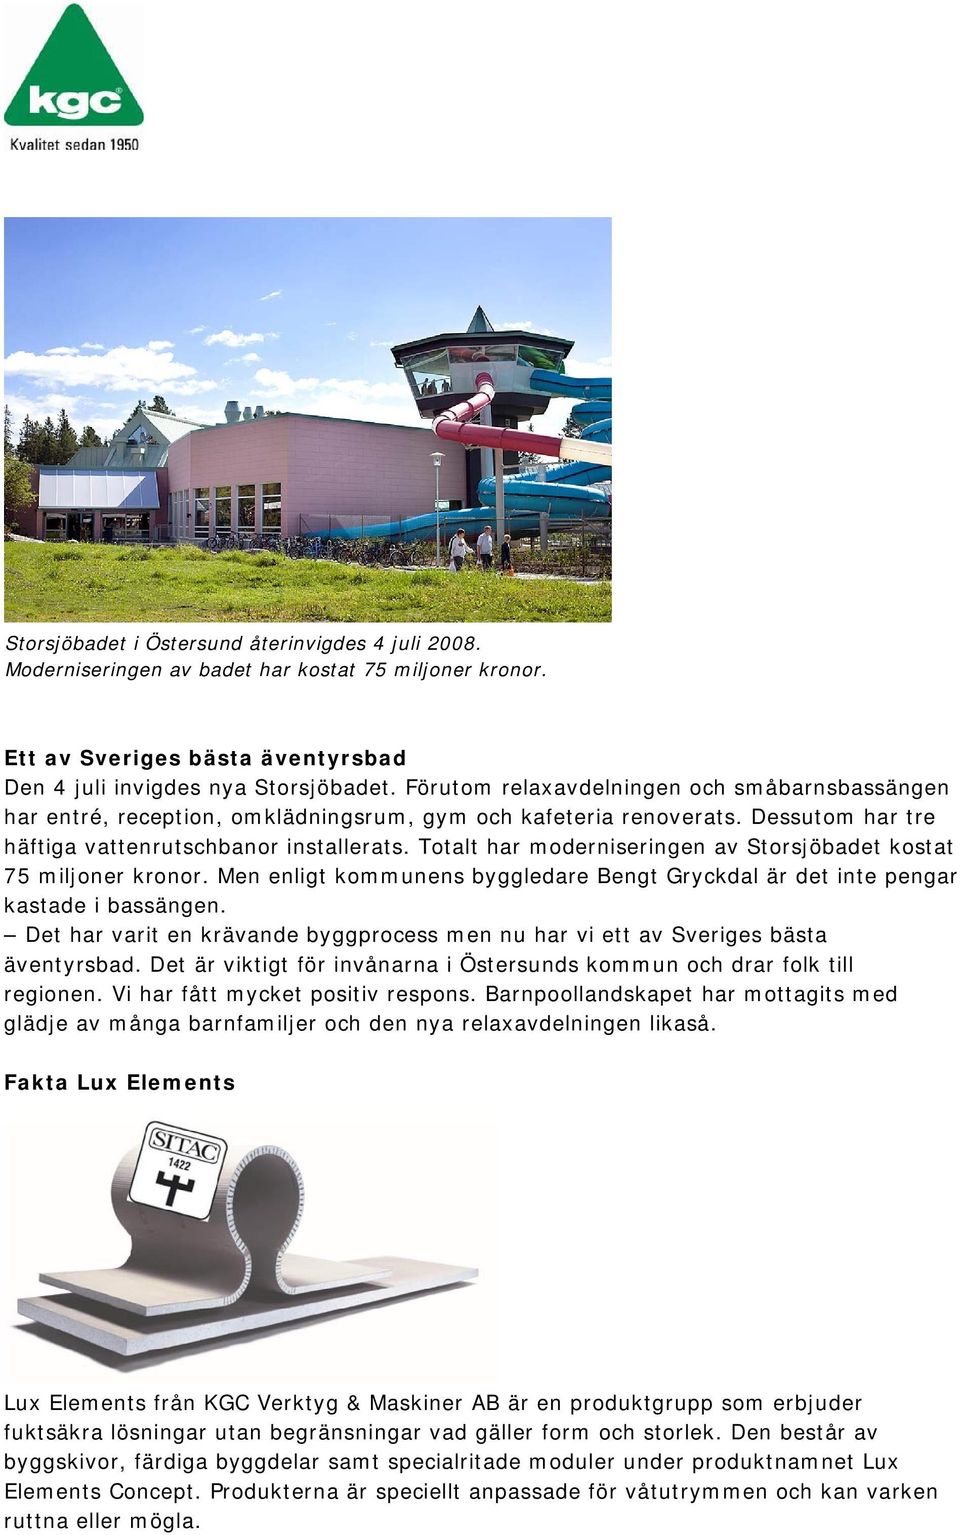 Totalt har moderniseringen av Storsjöbadet kostat 75 miljoner kronor. Men enligt kommunens byggledare Bengt Gryckdal är det inte pengar kastade i bassängen.